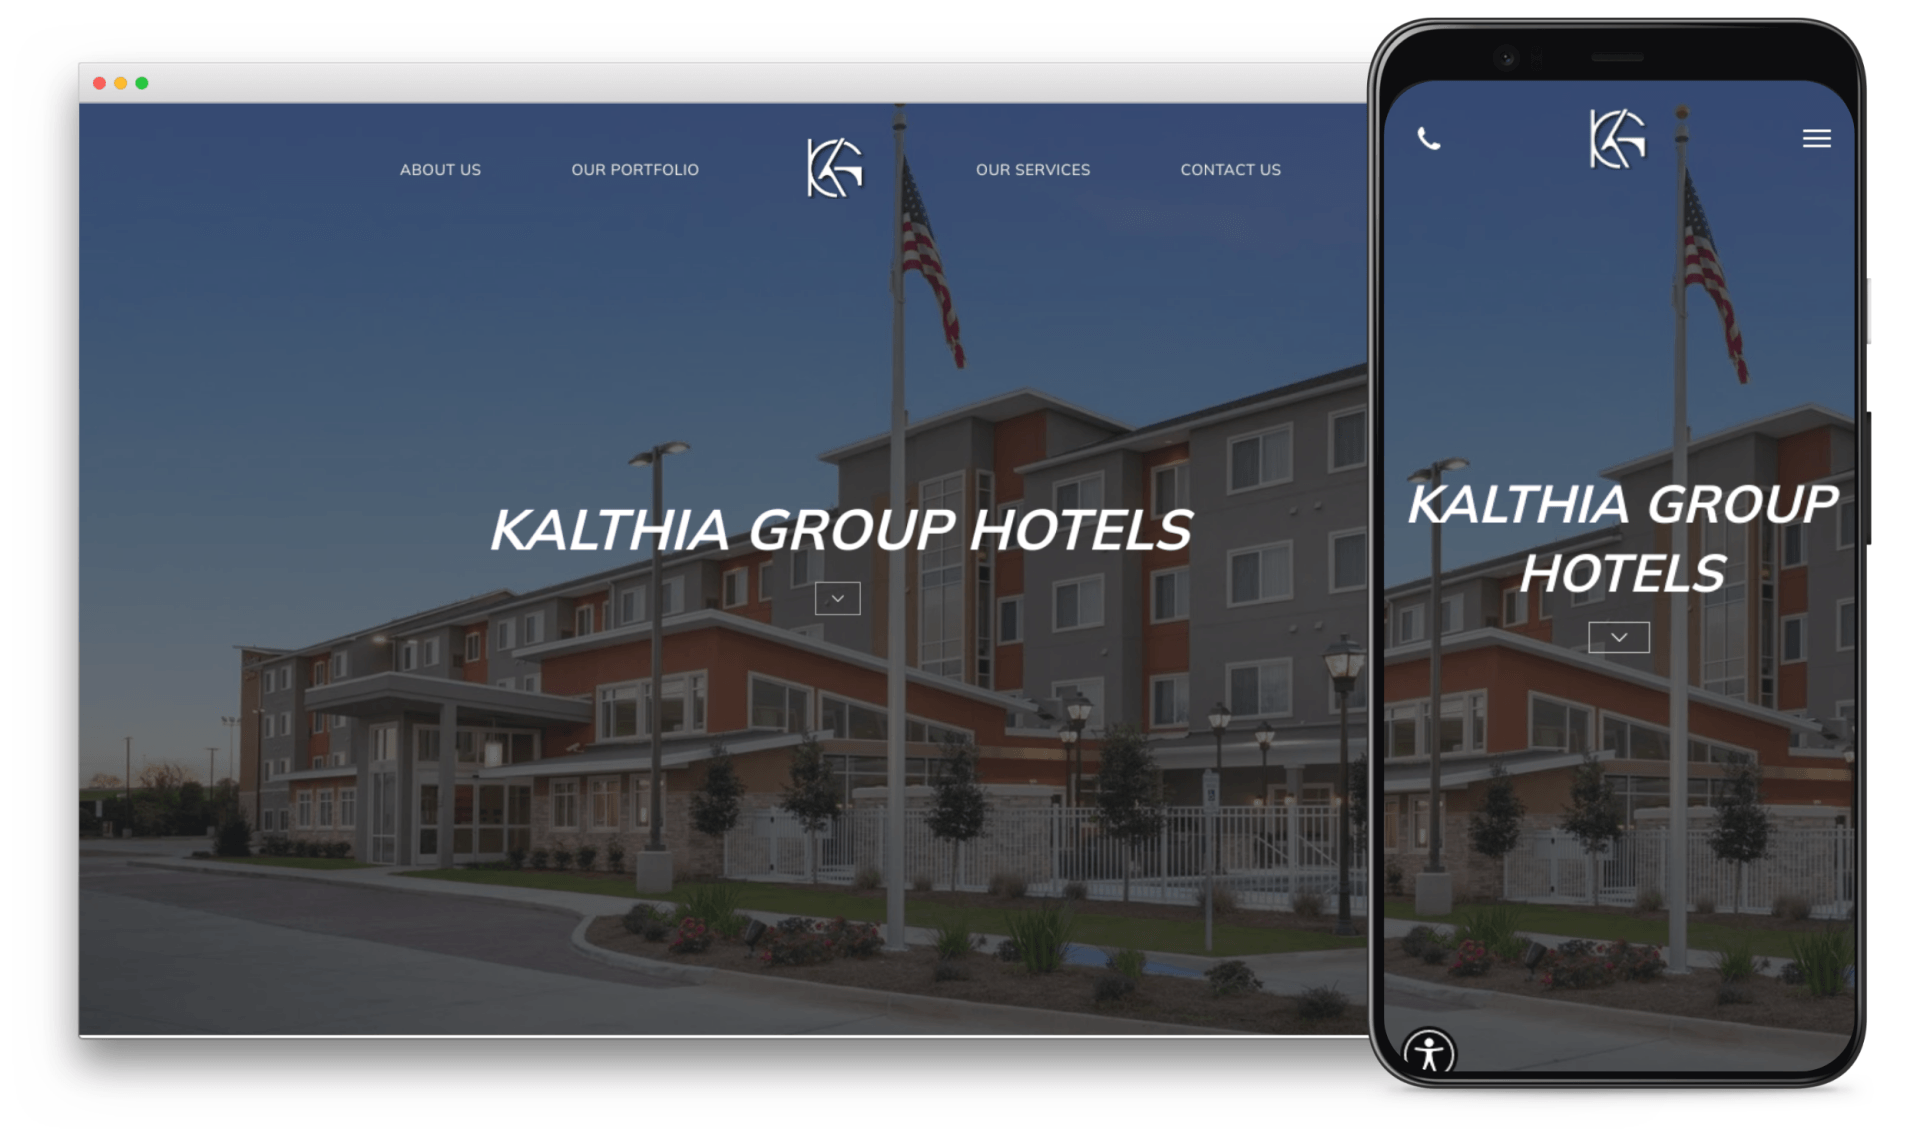 Kalthia Group Hotels Website in San Diego